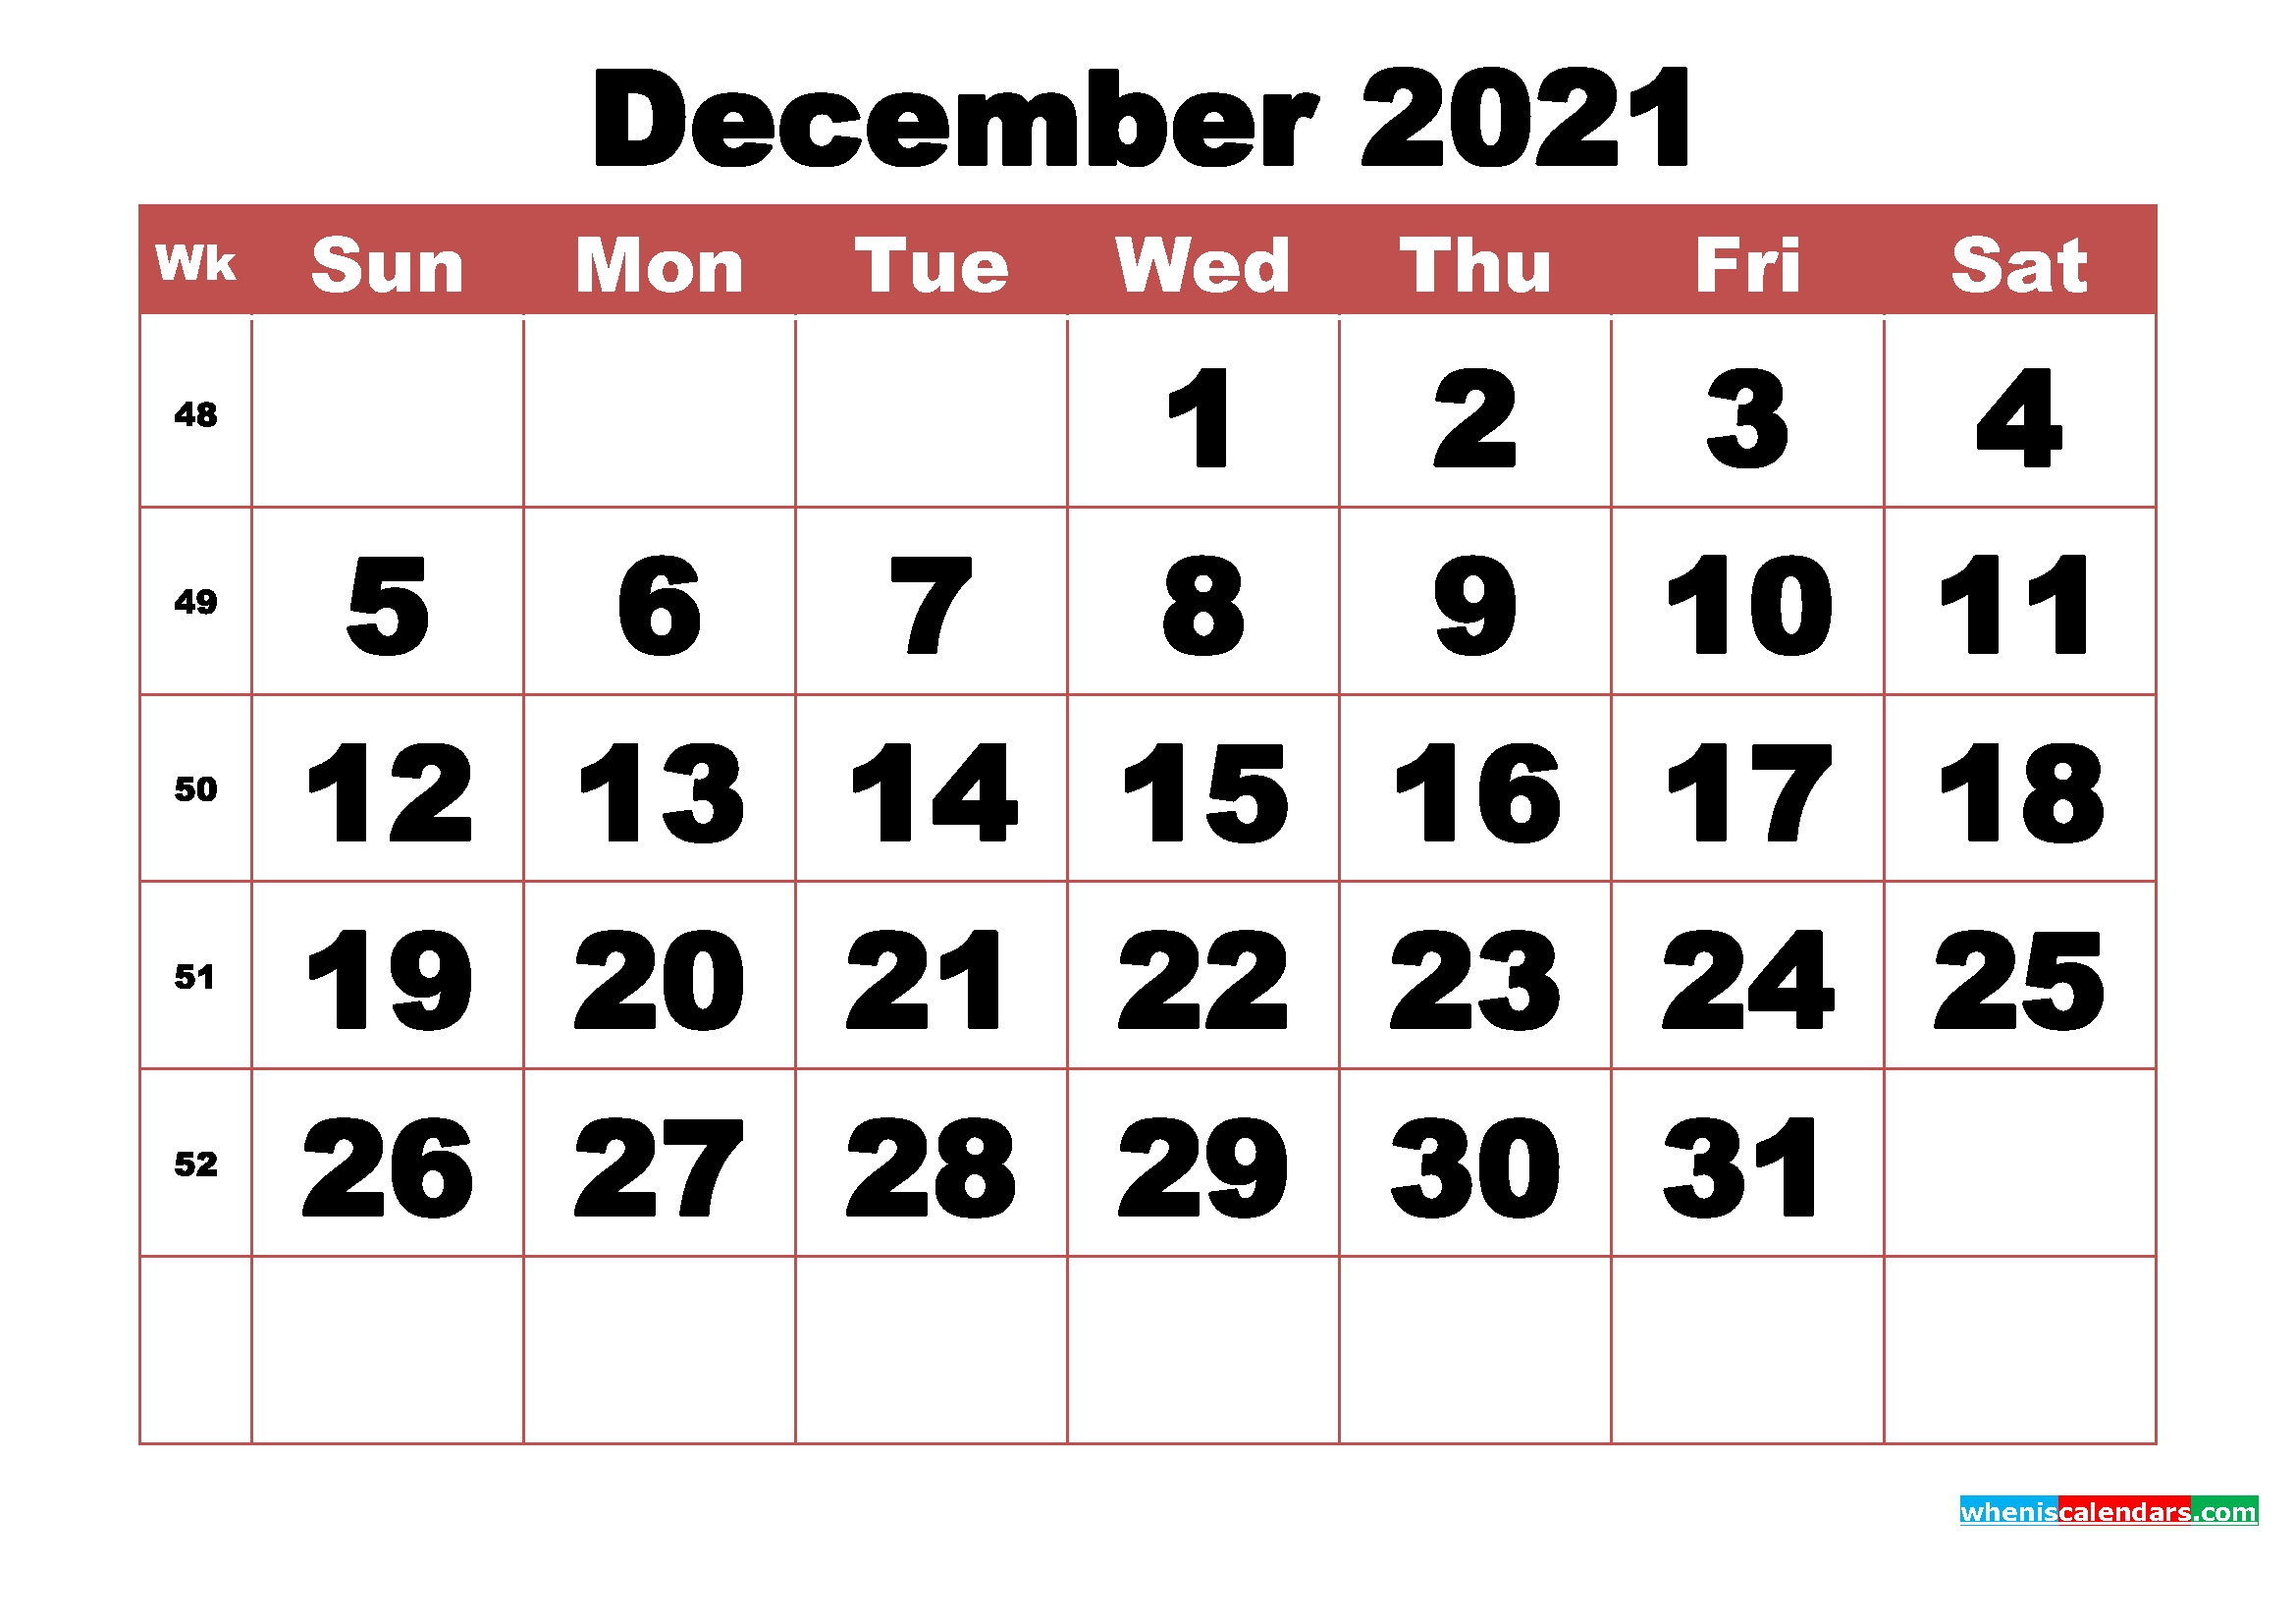 Free Printable December 2021 Calendar With Week Numbers - Free Printable 2020 Monthly Calendar Printable Monthly Calendar December 2020 And January 2021